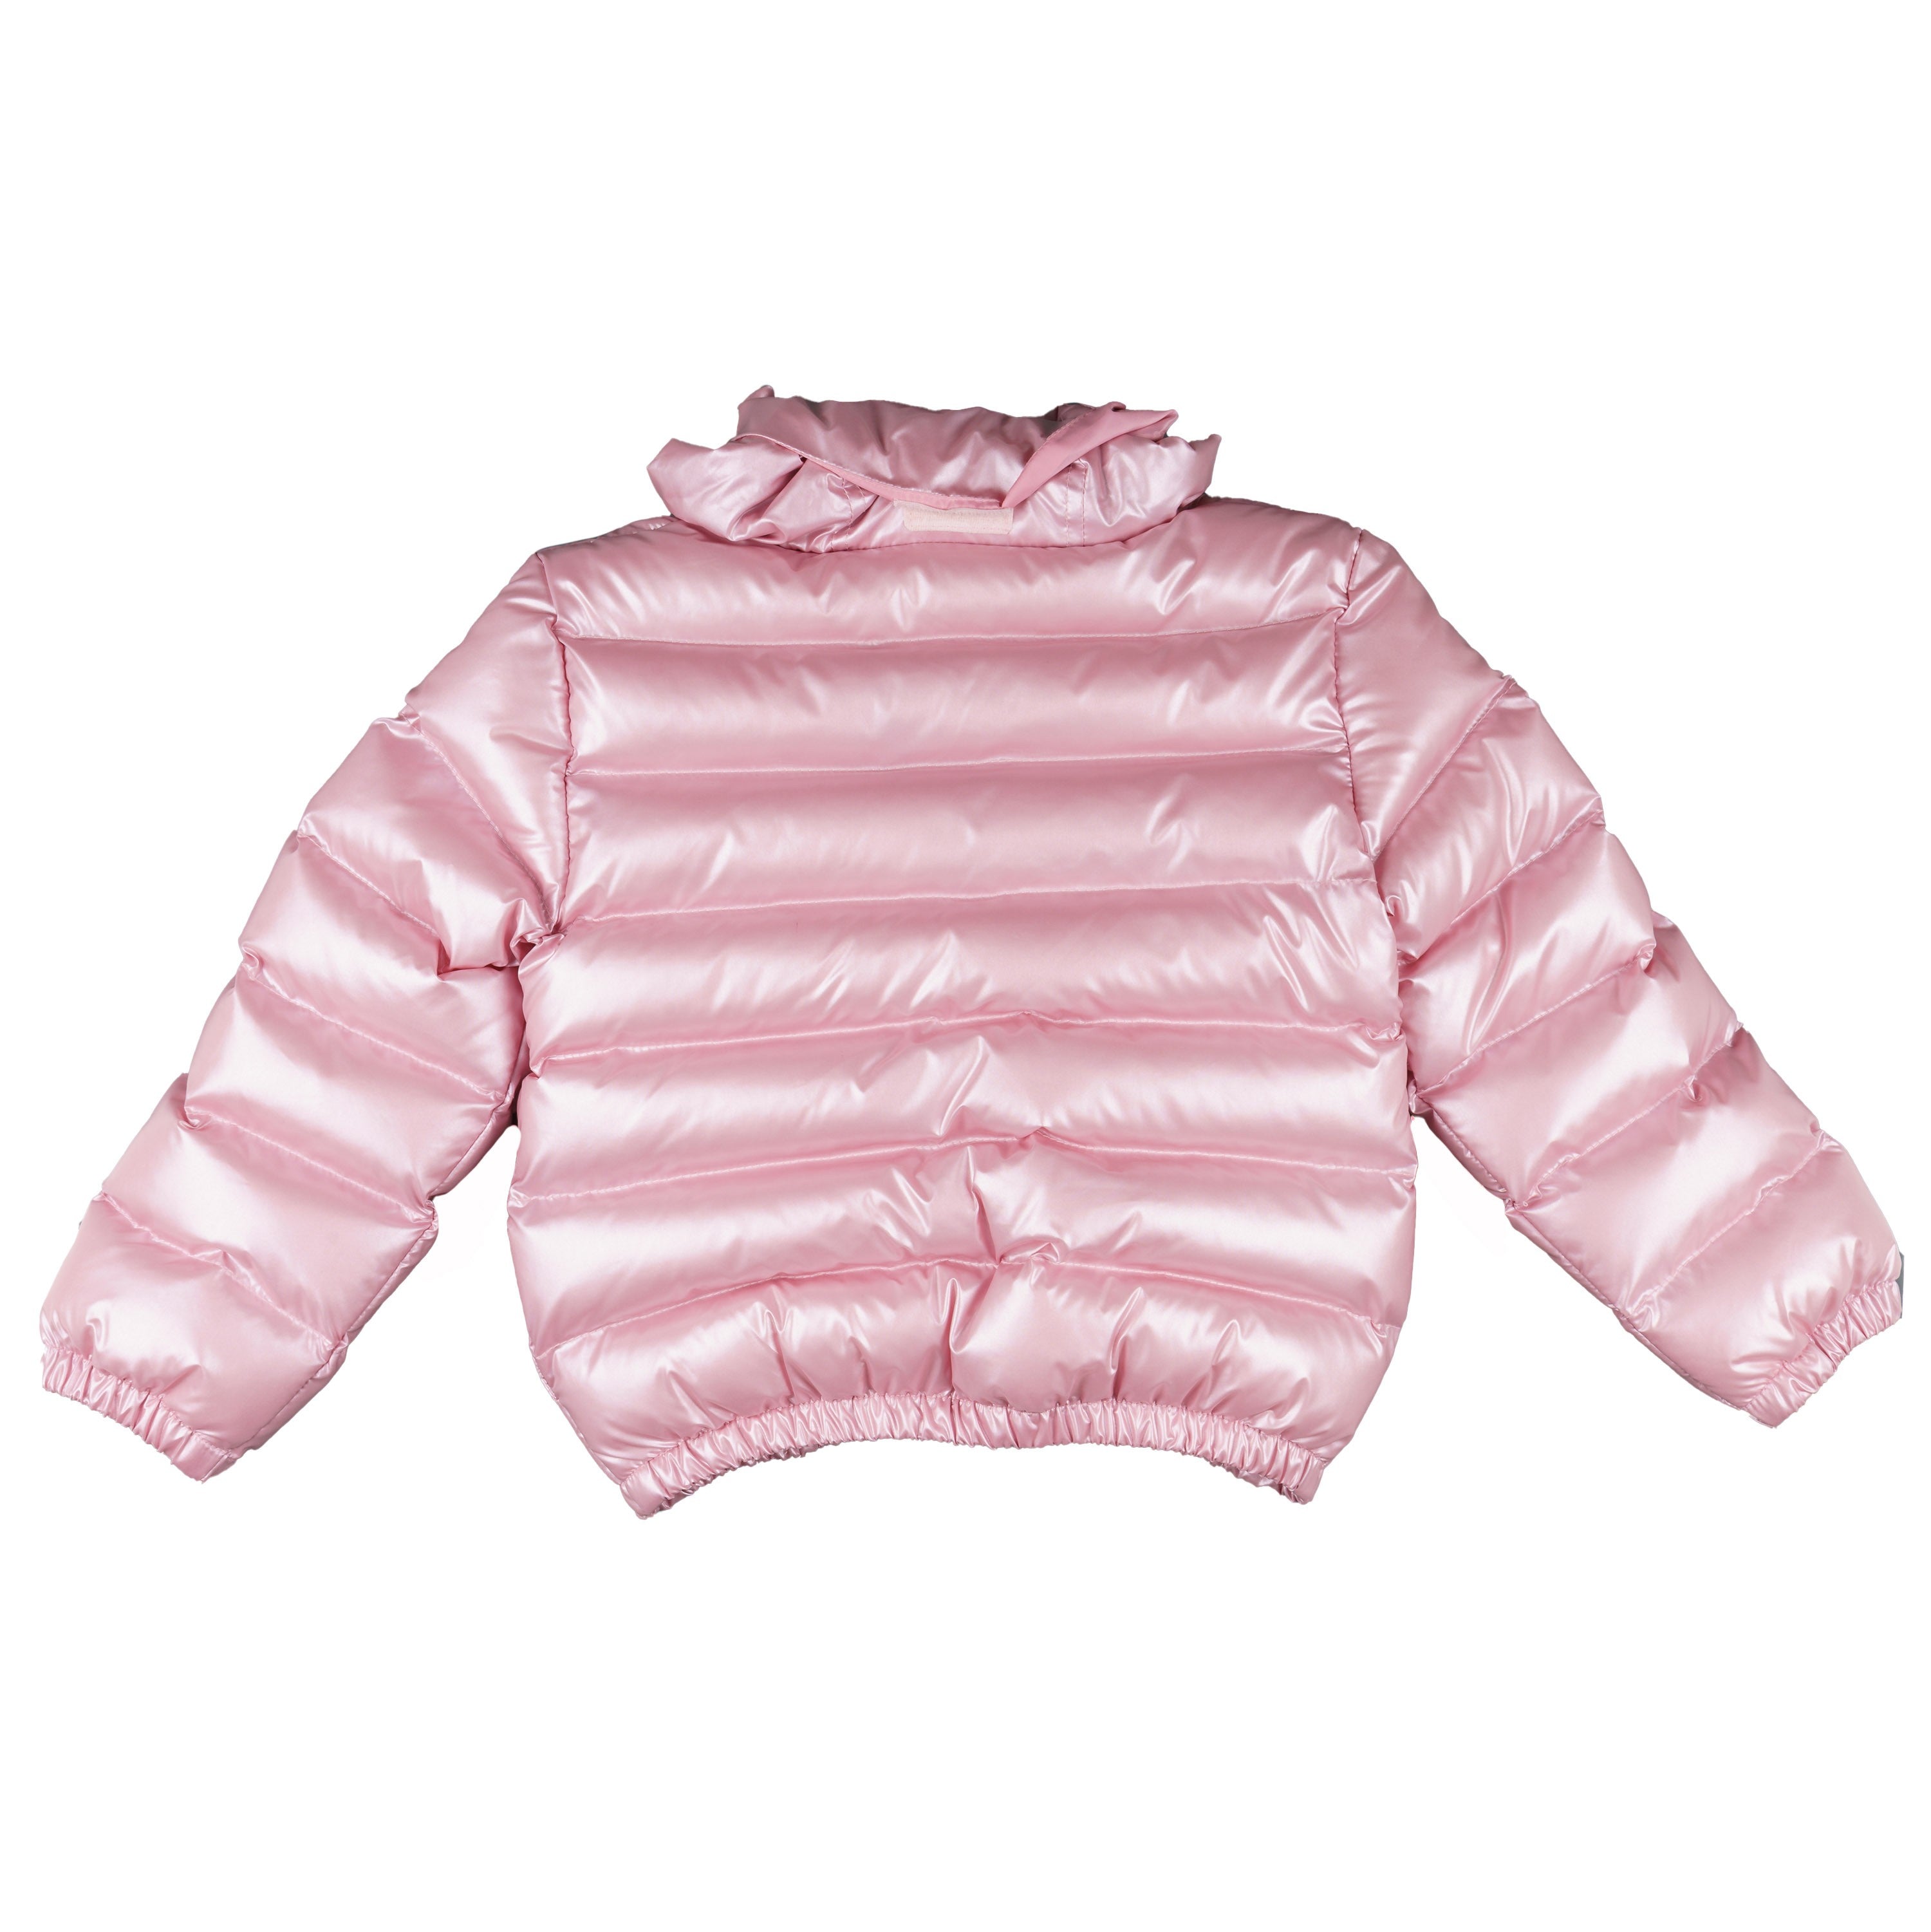 Abrigo de niña color rosa metalizado Outlet